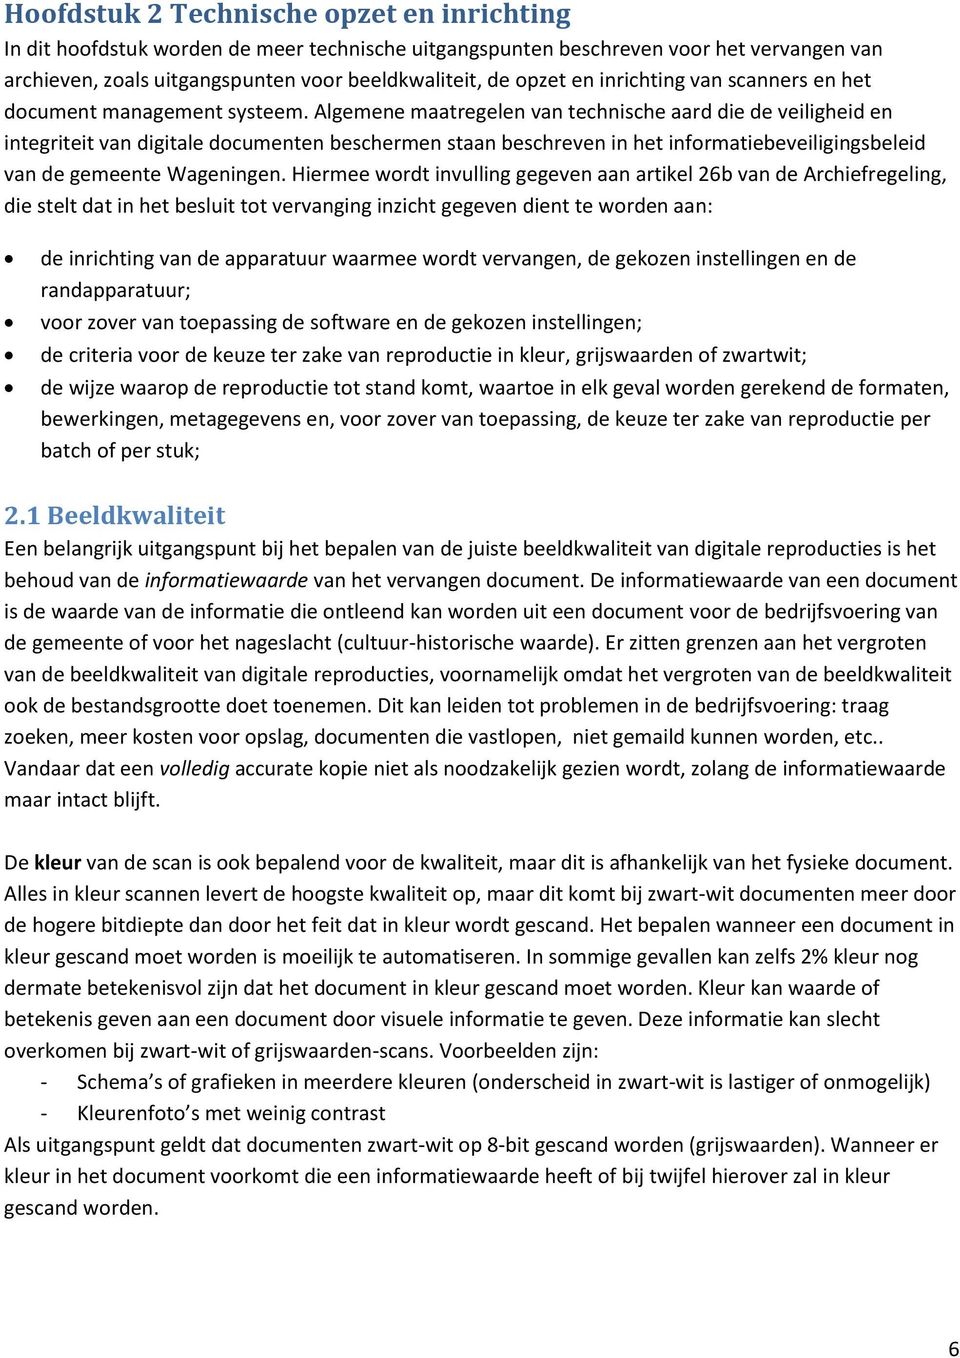 Algemene maatregelen van technische aard die de veiligheid en integriteit van digitale documenten beschermen staan beschreven in het informatiebeveiligingsbeleid van de gemeente Wageningen.